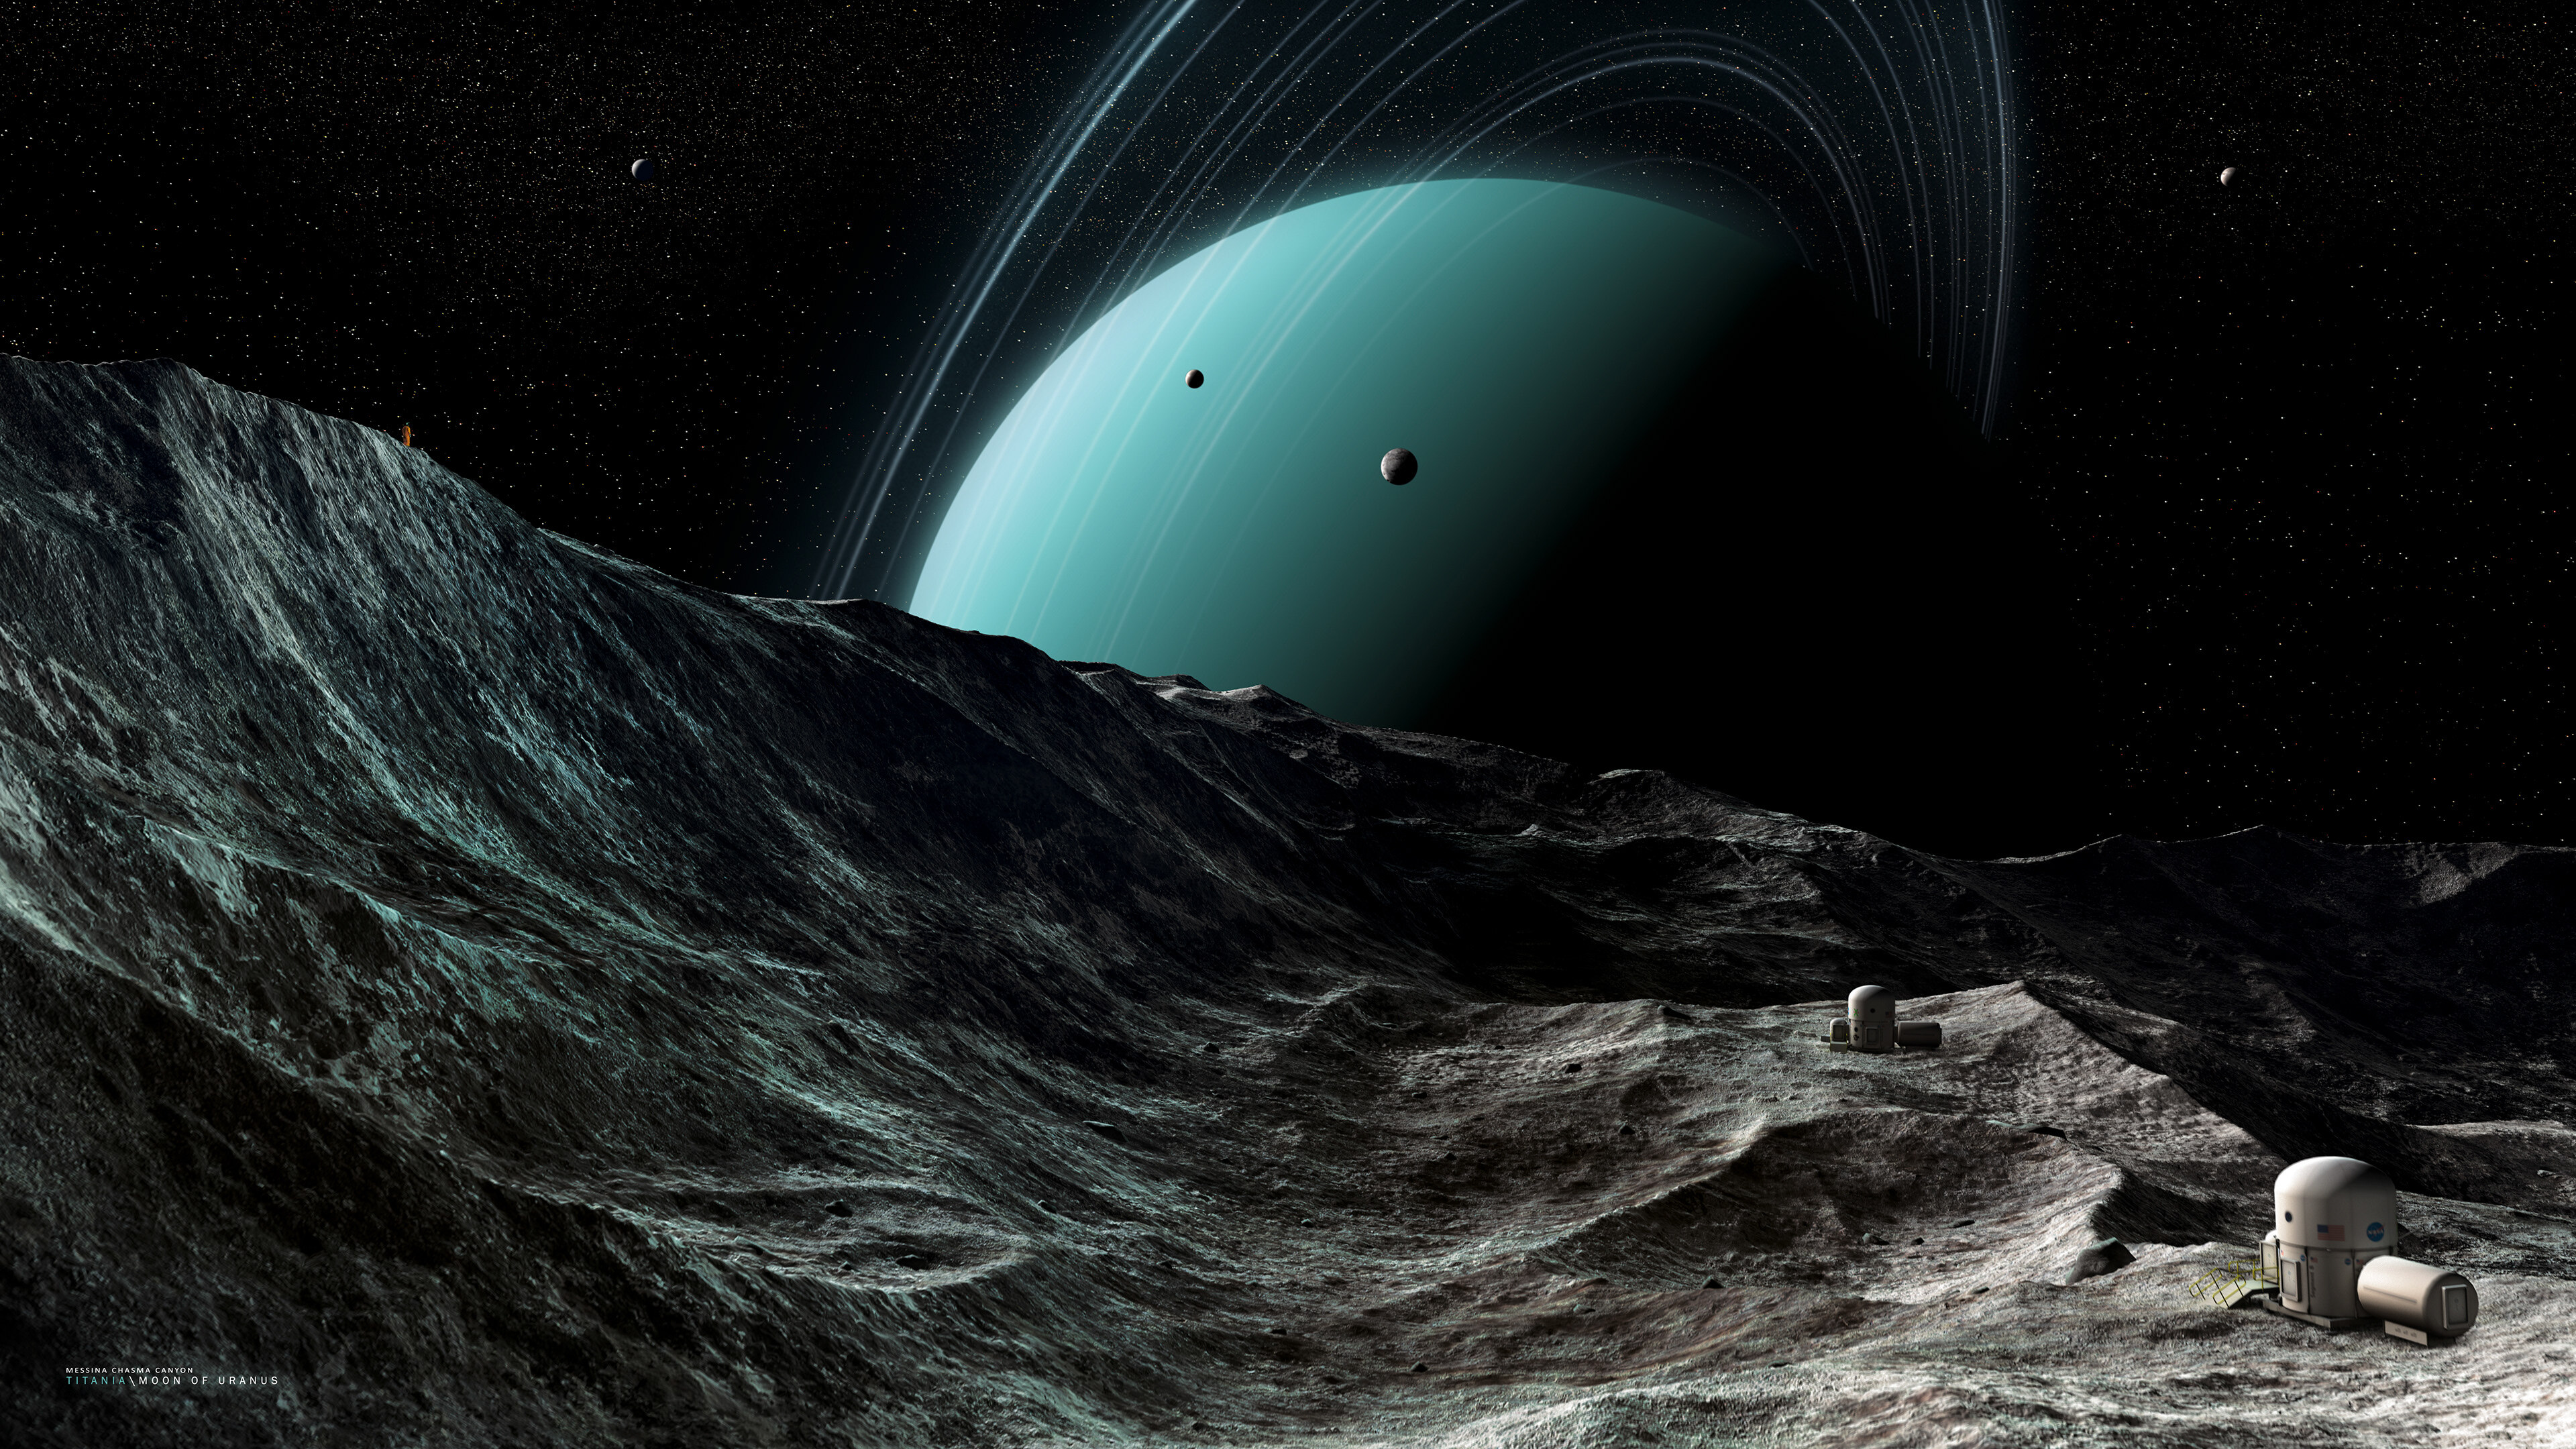 天王星四个卫星上发现地下海洋,科学家:或可能存在外星生物